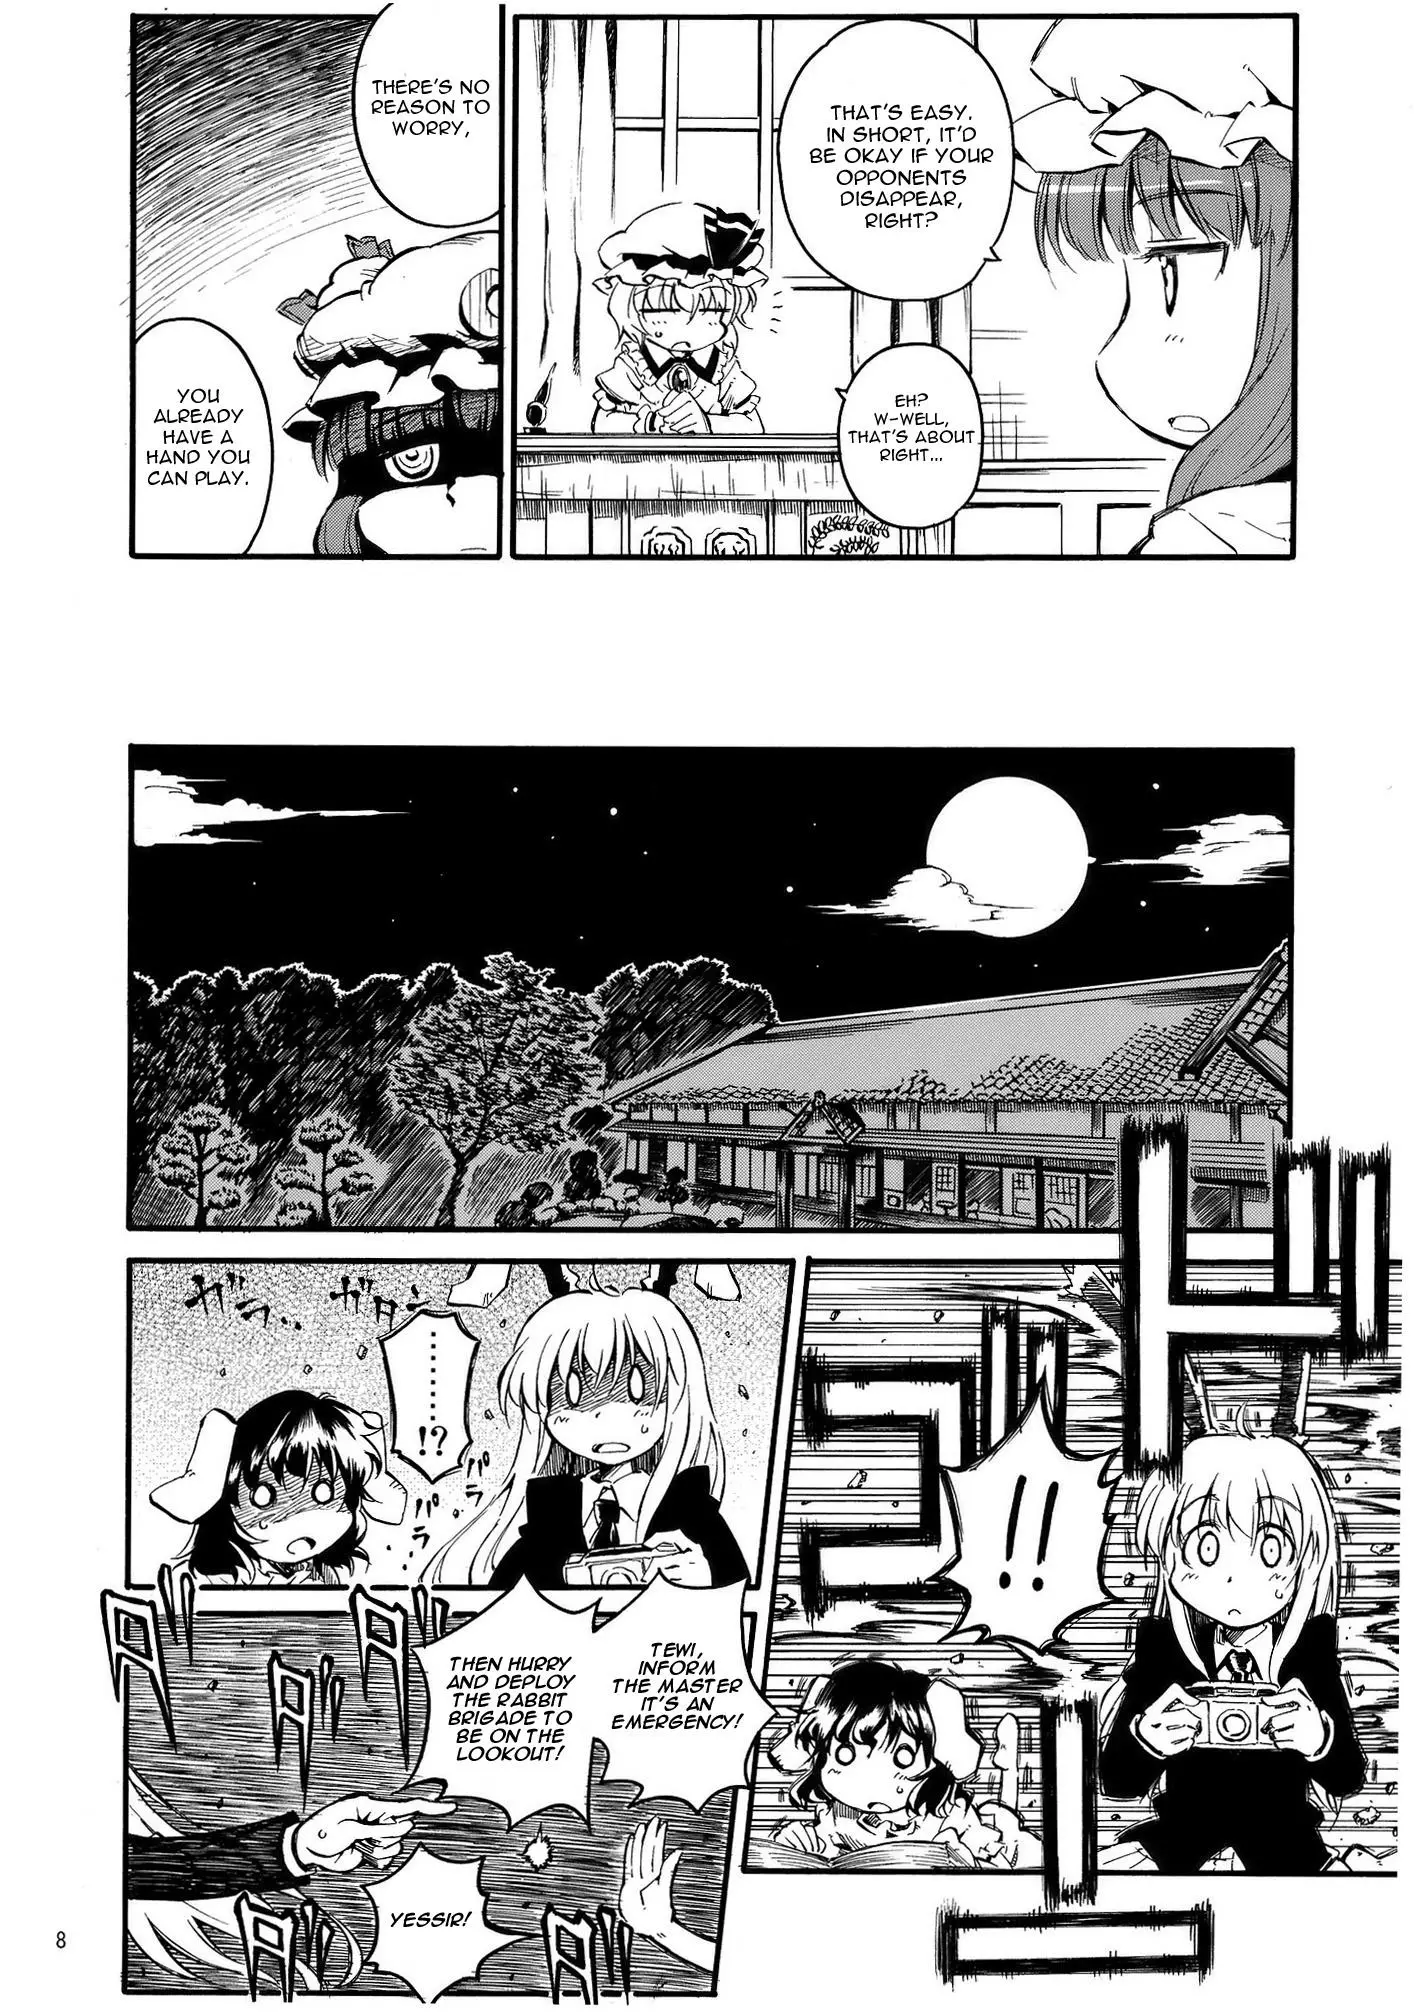 Touhou - Onegai Remilia (Doujinshi) - 4 page 8-2072803a